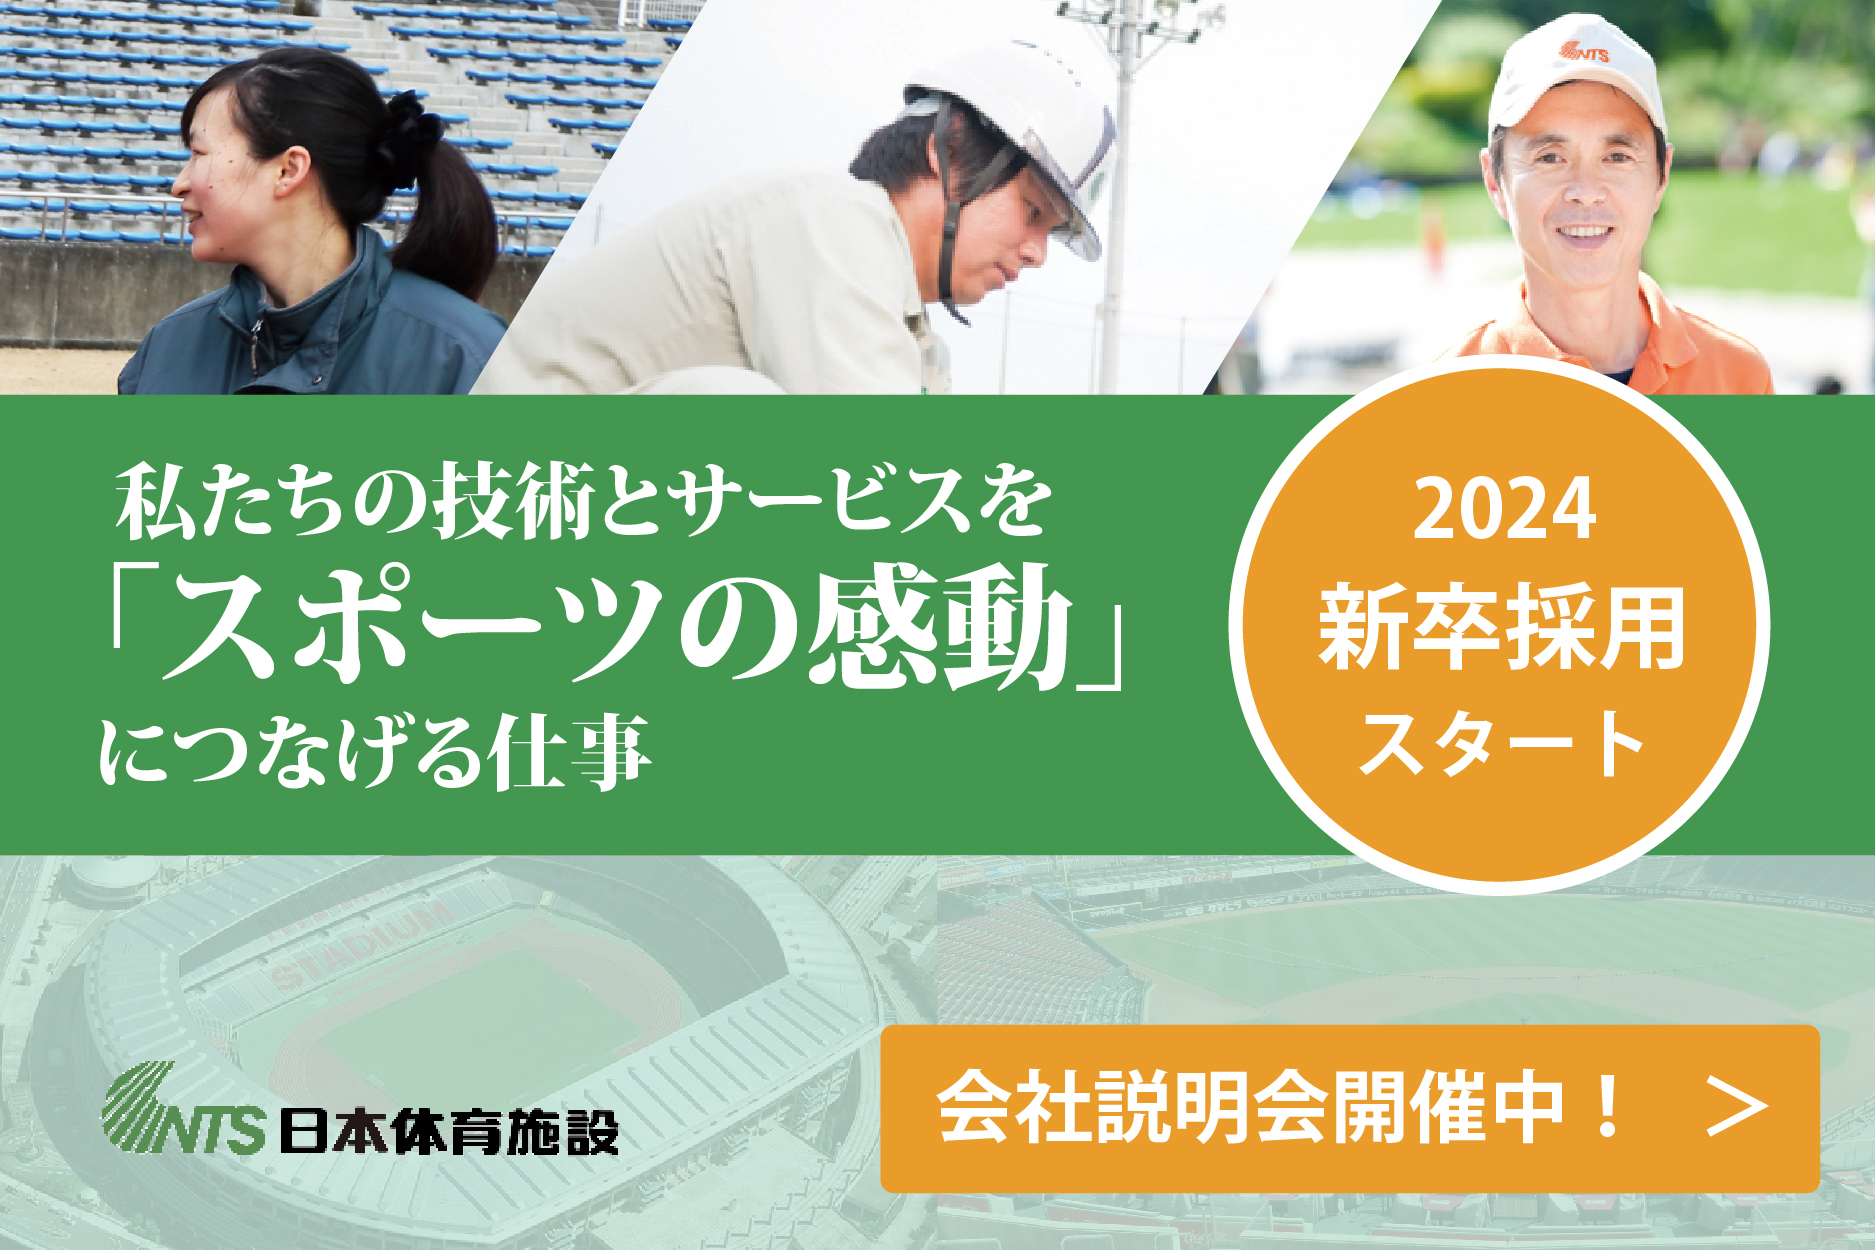 「スポーツと関わり続ける仕事」日本選手権優勝選手も働く『日本体育施設』5月に説明会を実施